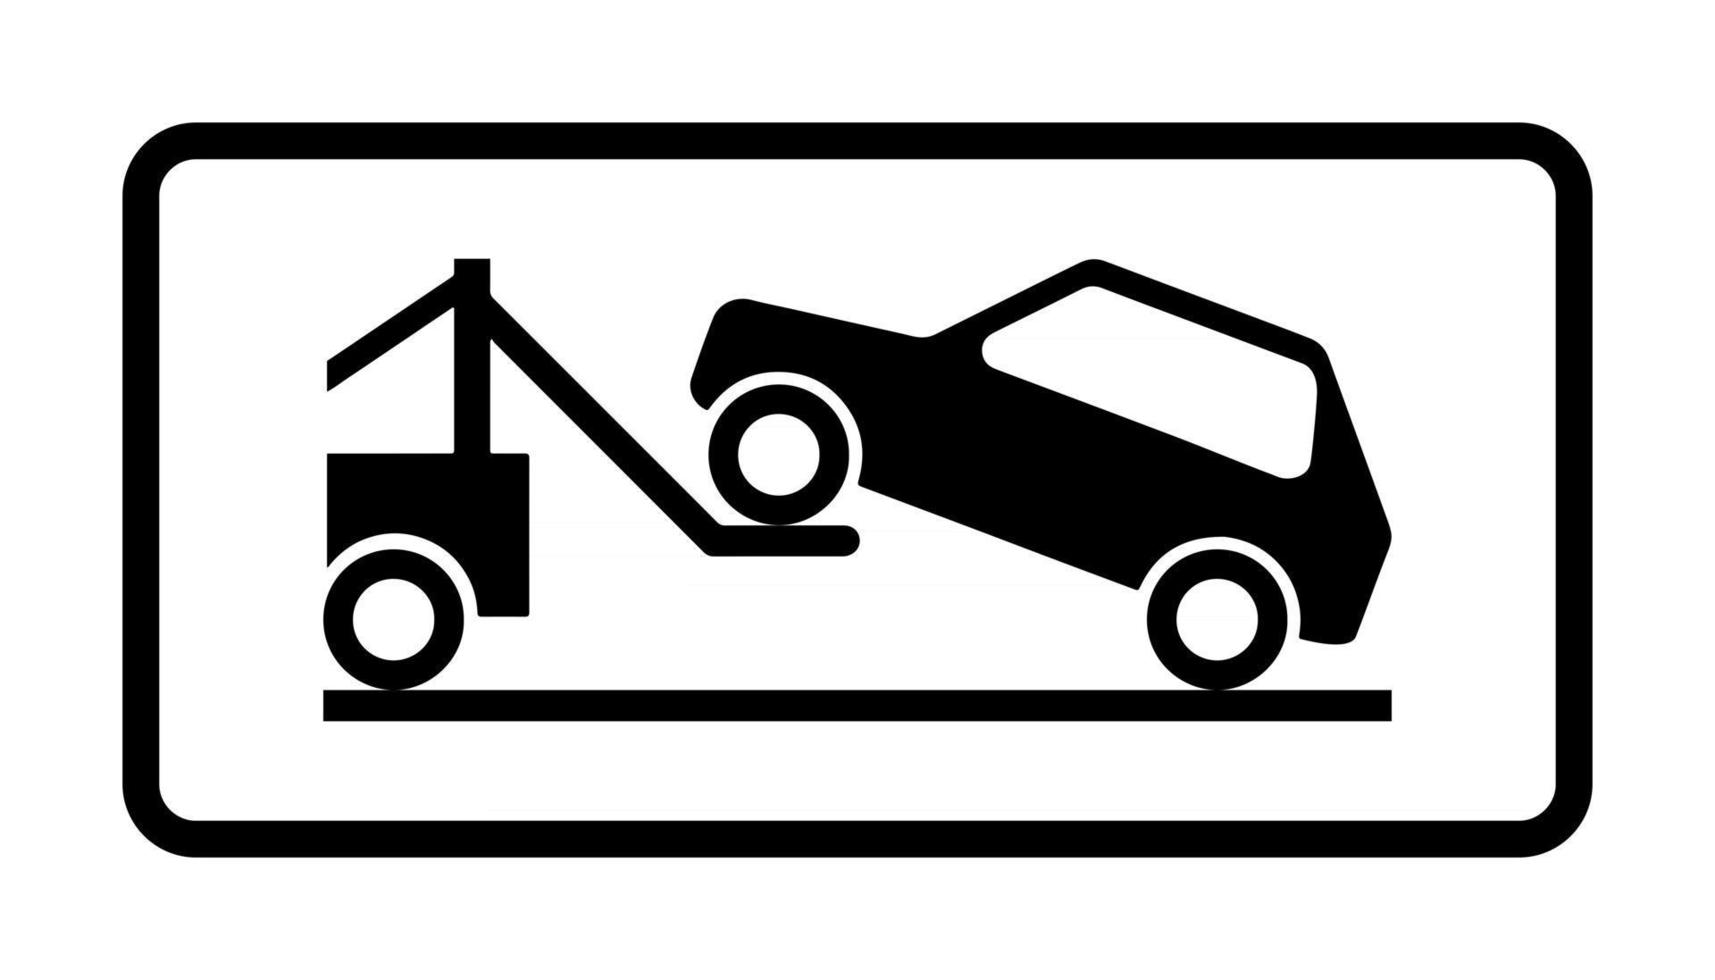 Sinais de trânsito, regras, estacionamento é proibido, pare, reboque,  caminhão, seta